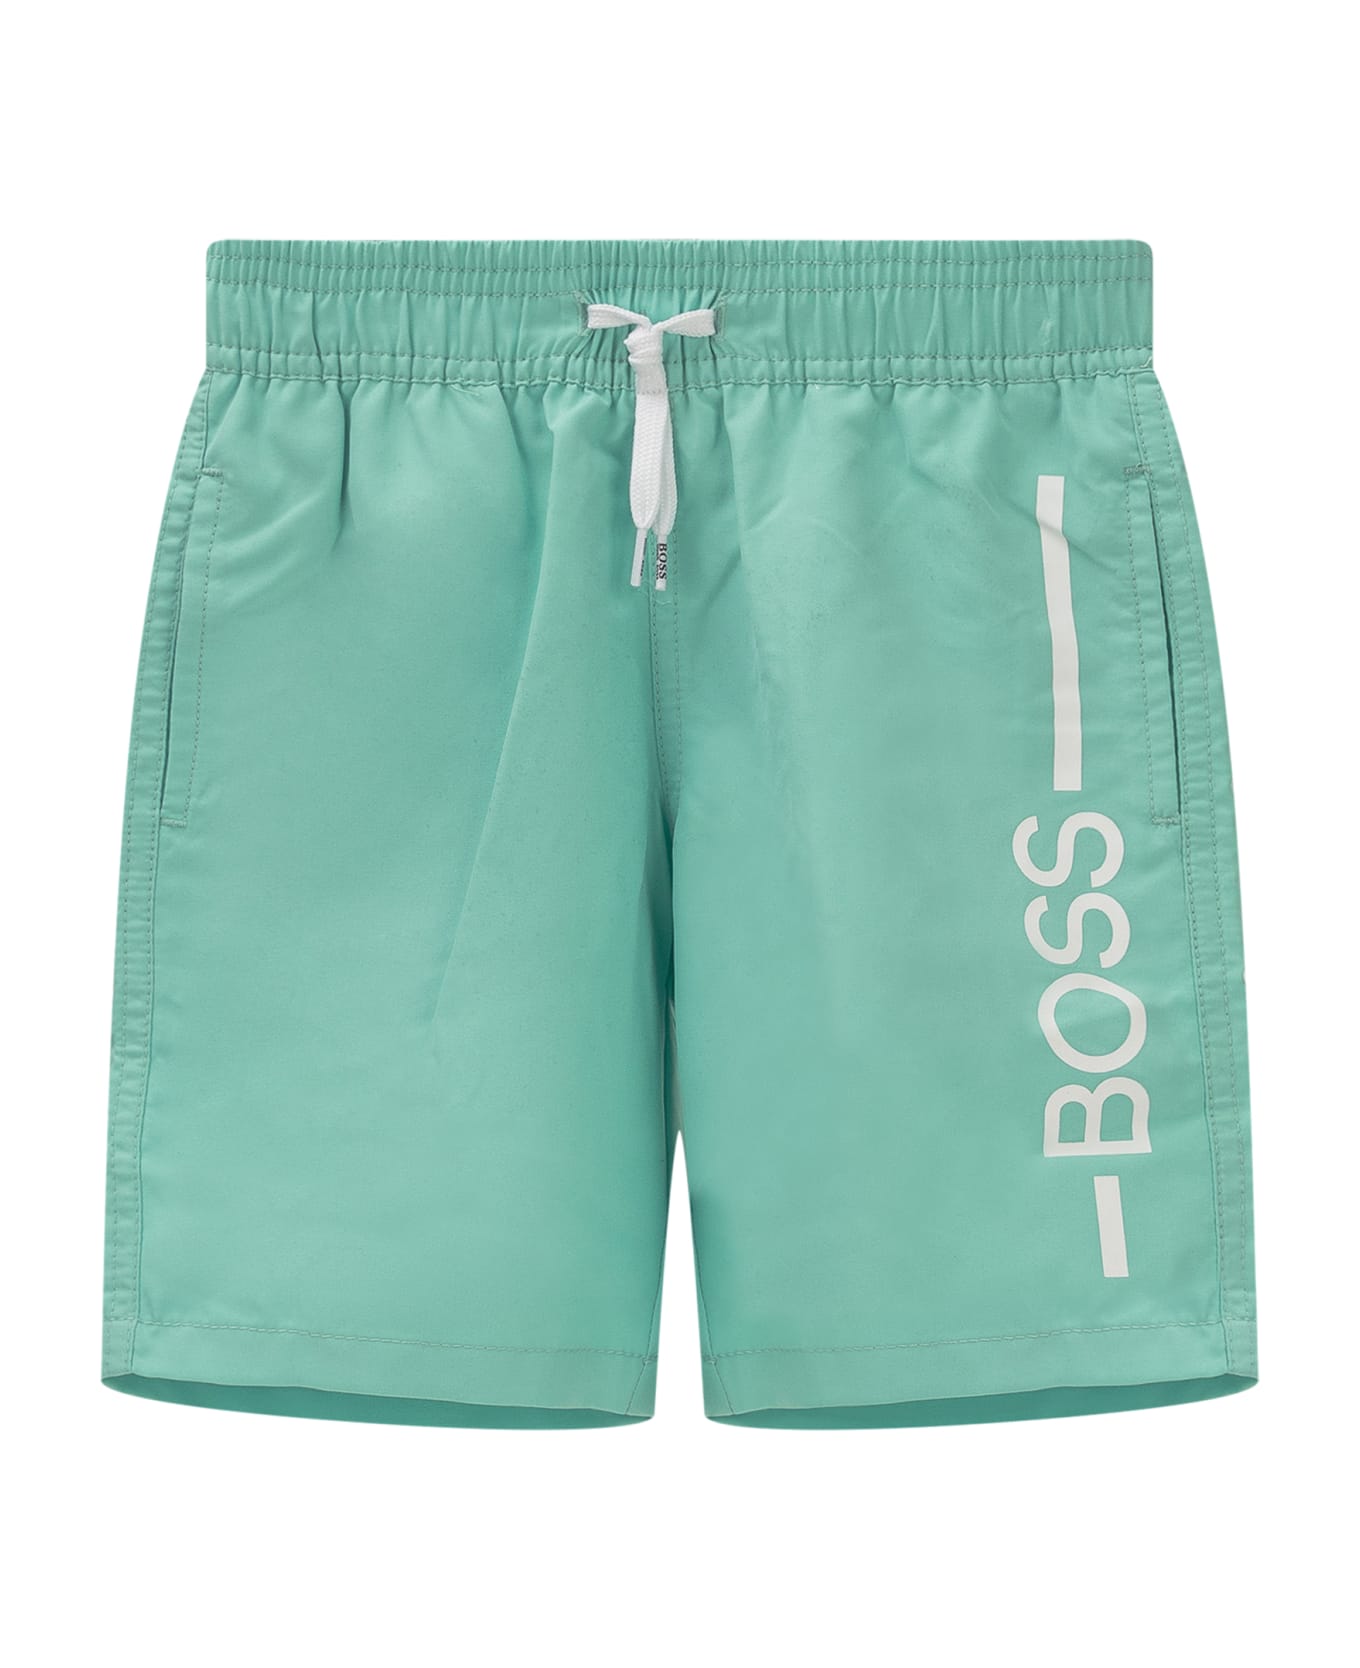 Hugo Boss Swim Shorts - MARIGOLD